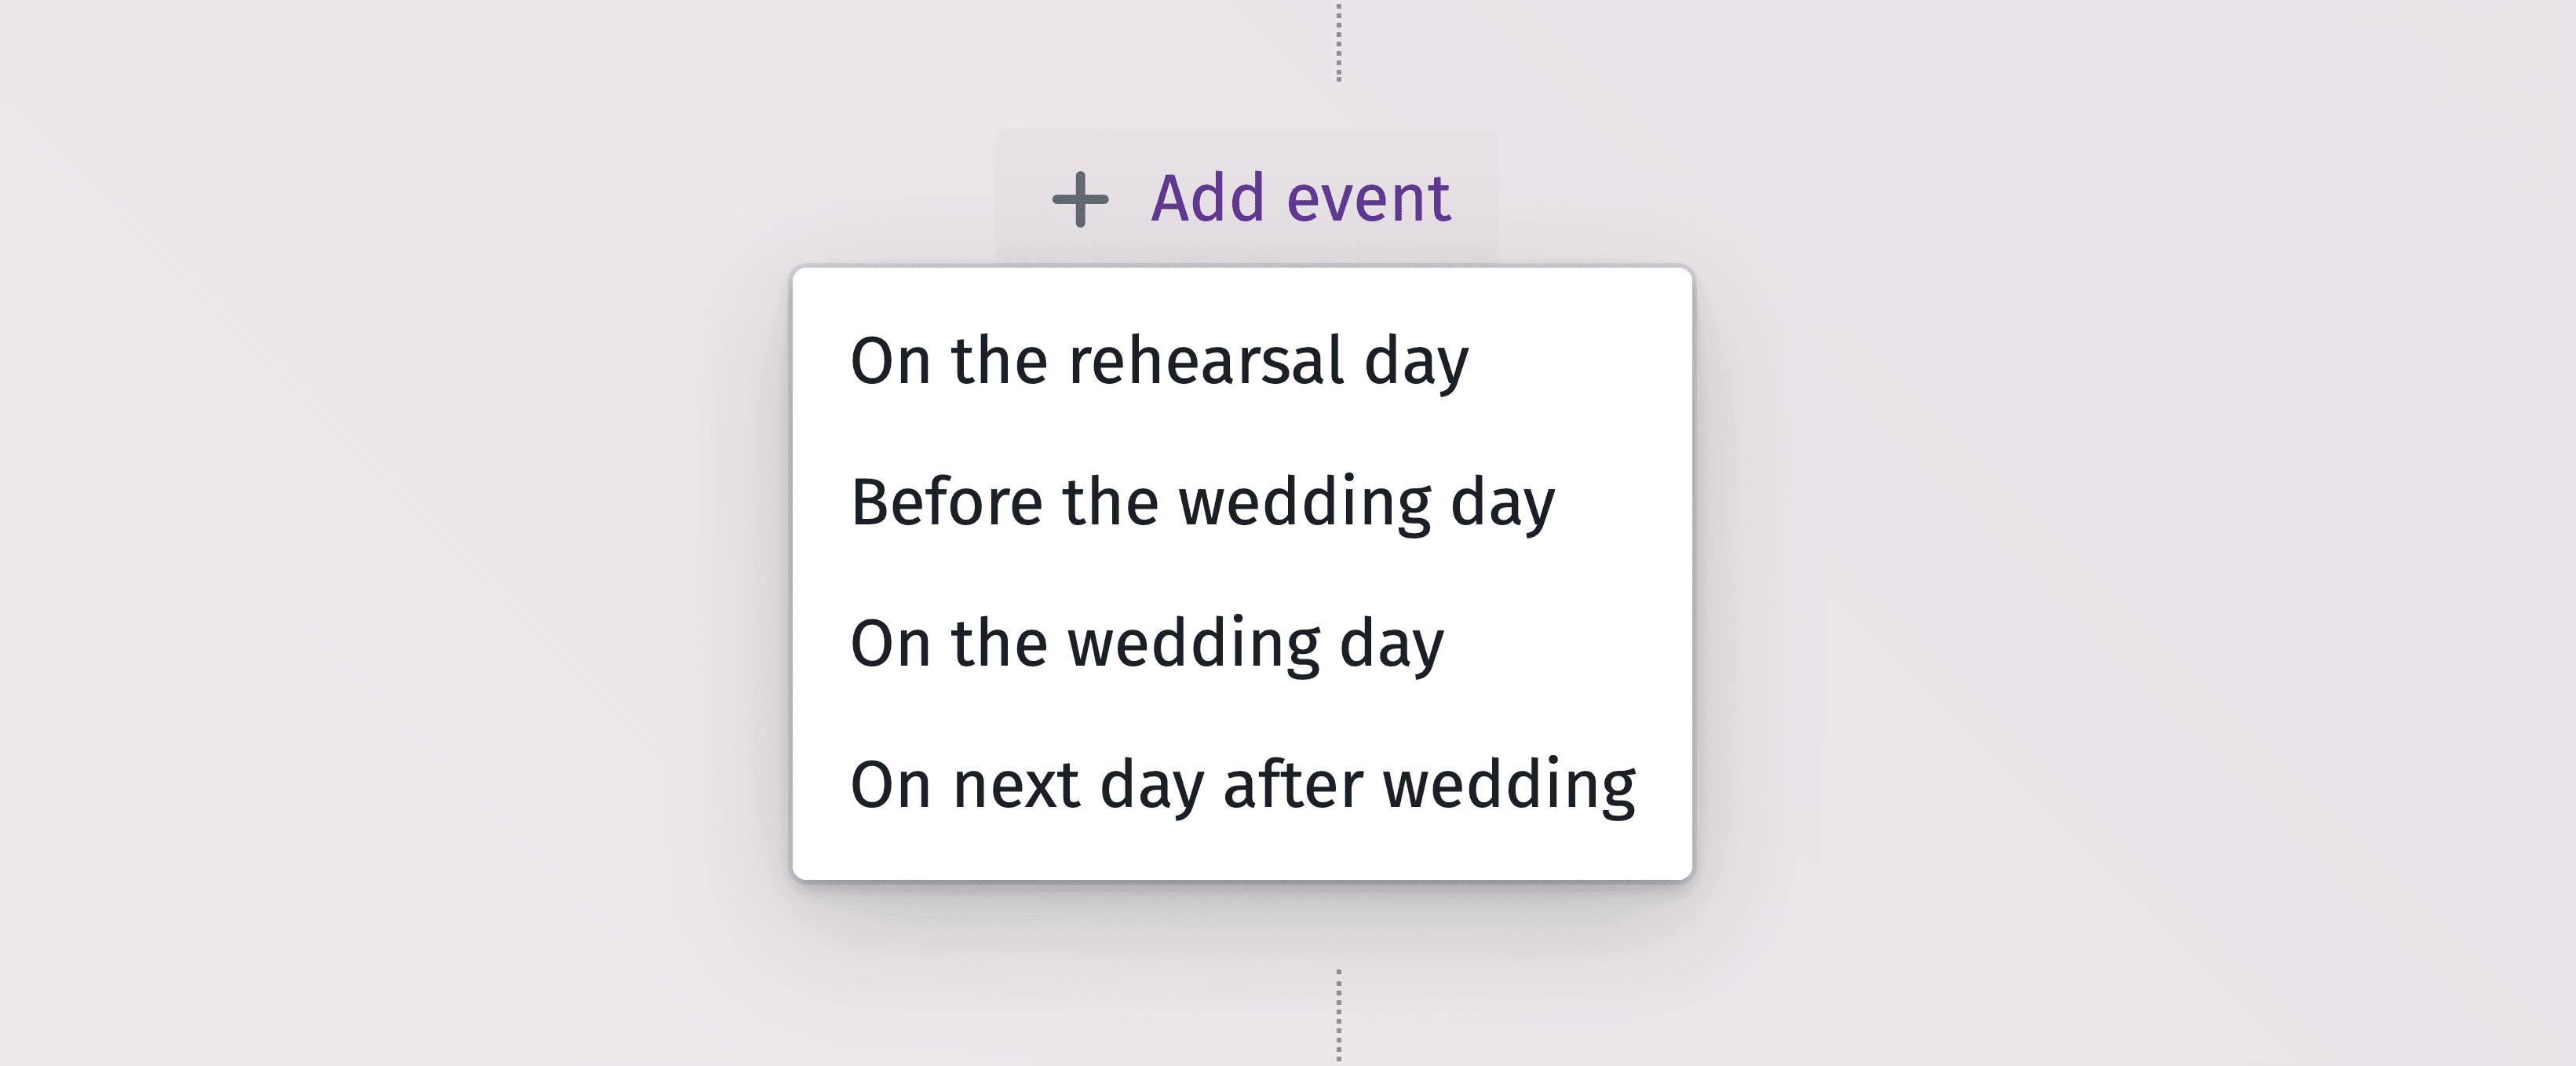 結婚式のすべての瞬間を効率的に計画するための詳細なタイムライングラフィック